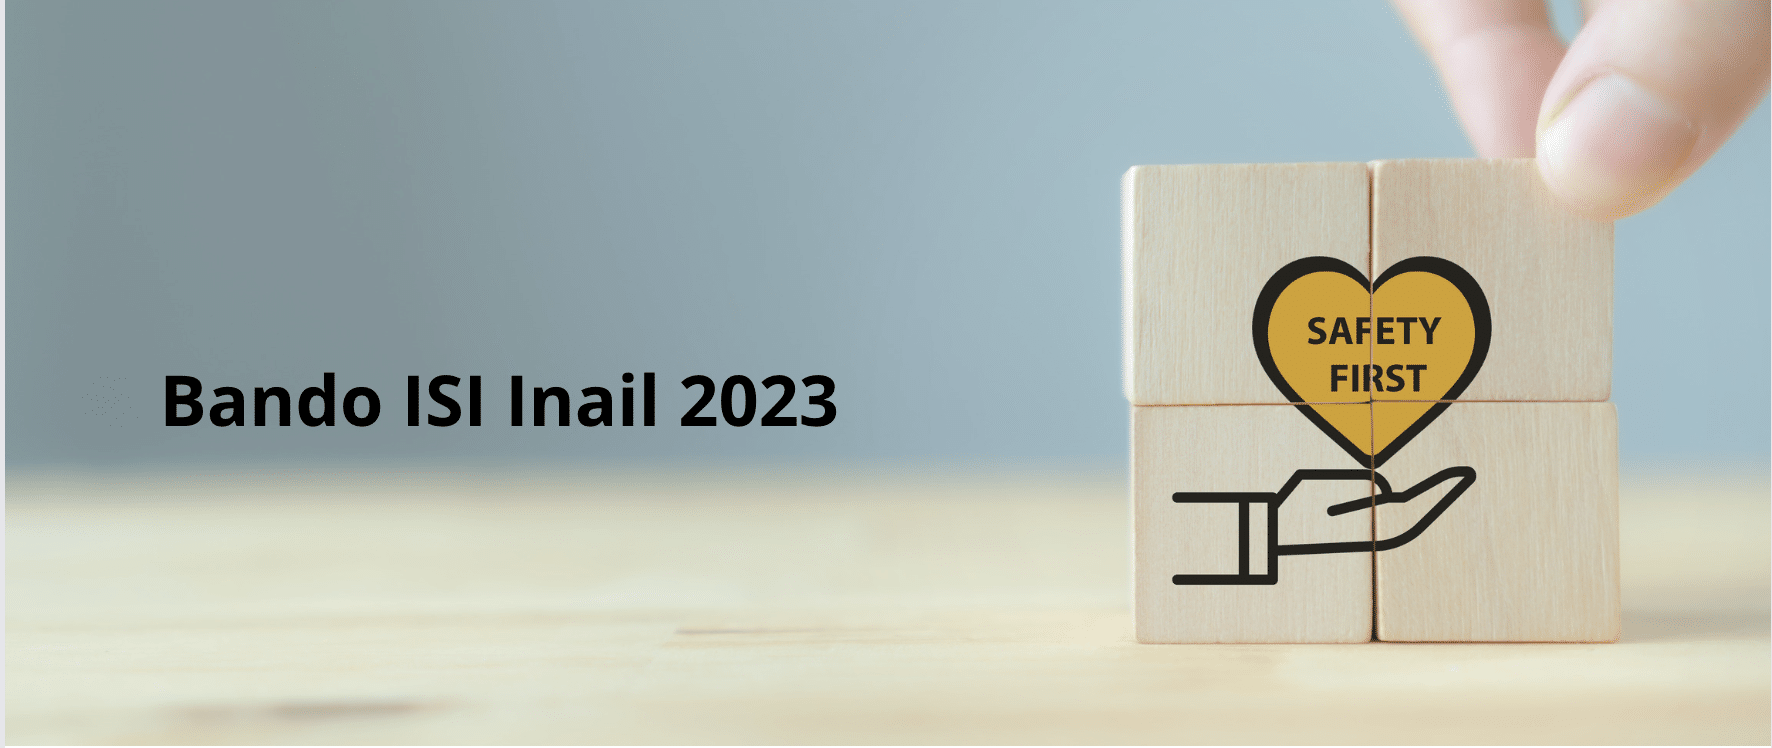 Bando-ISI-Inail-2023-